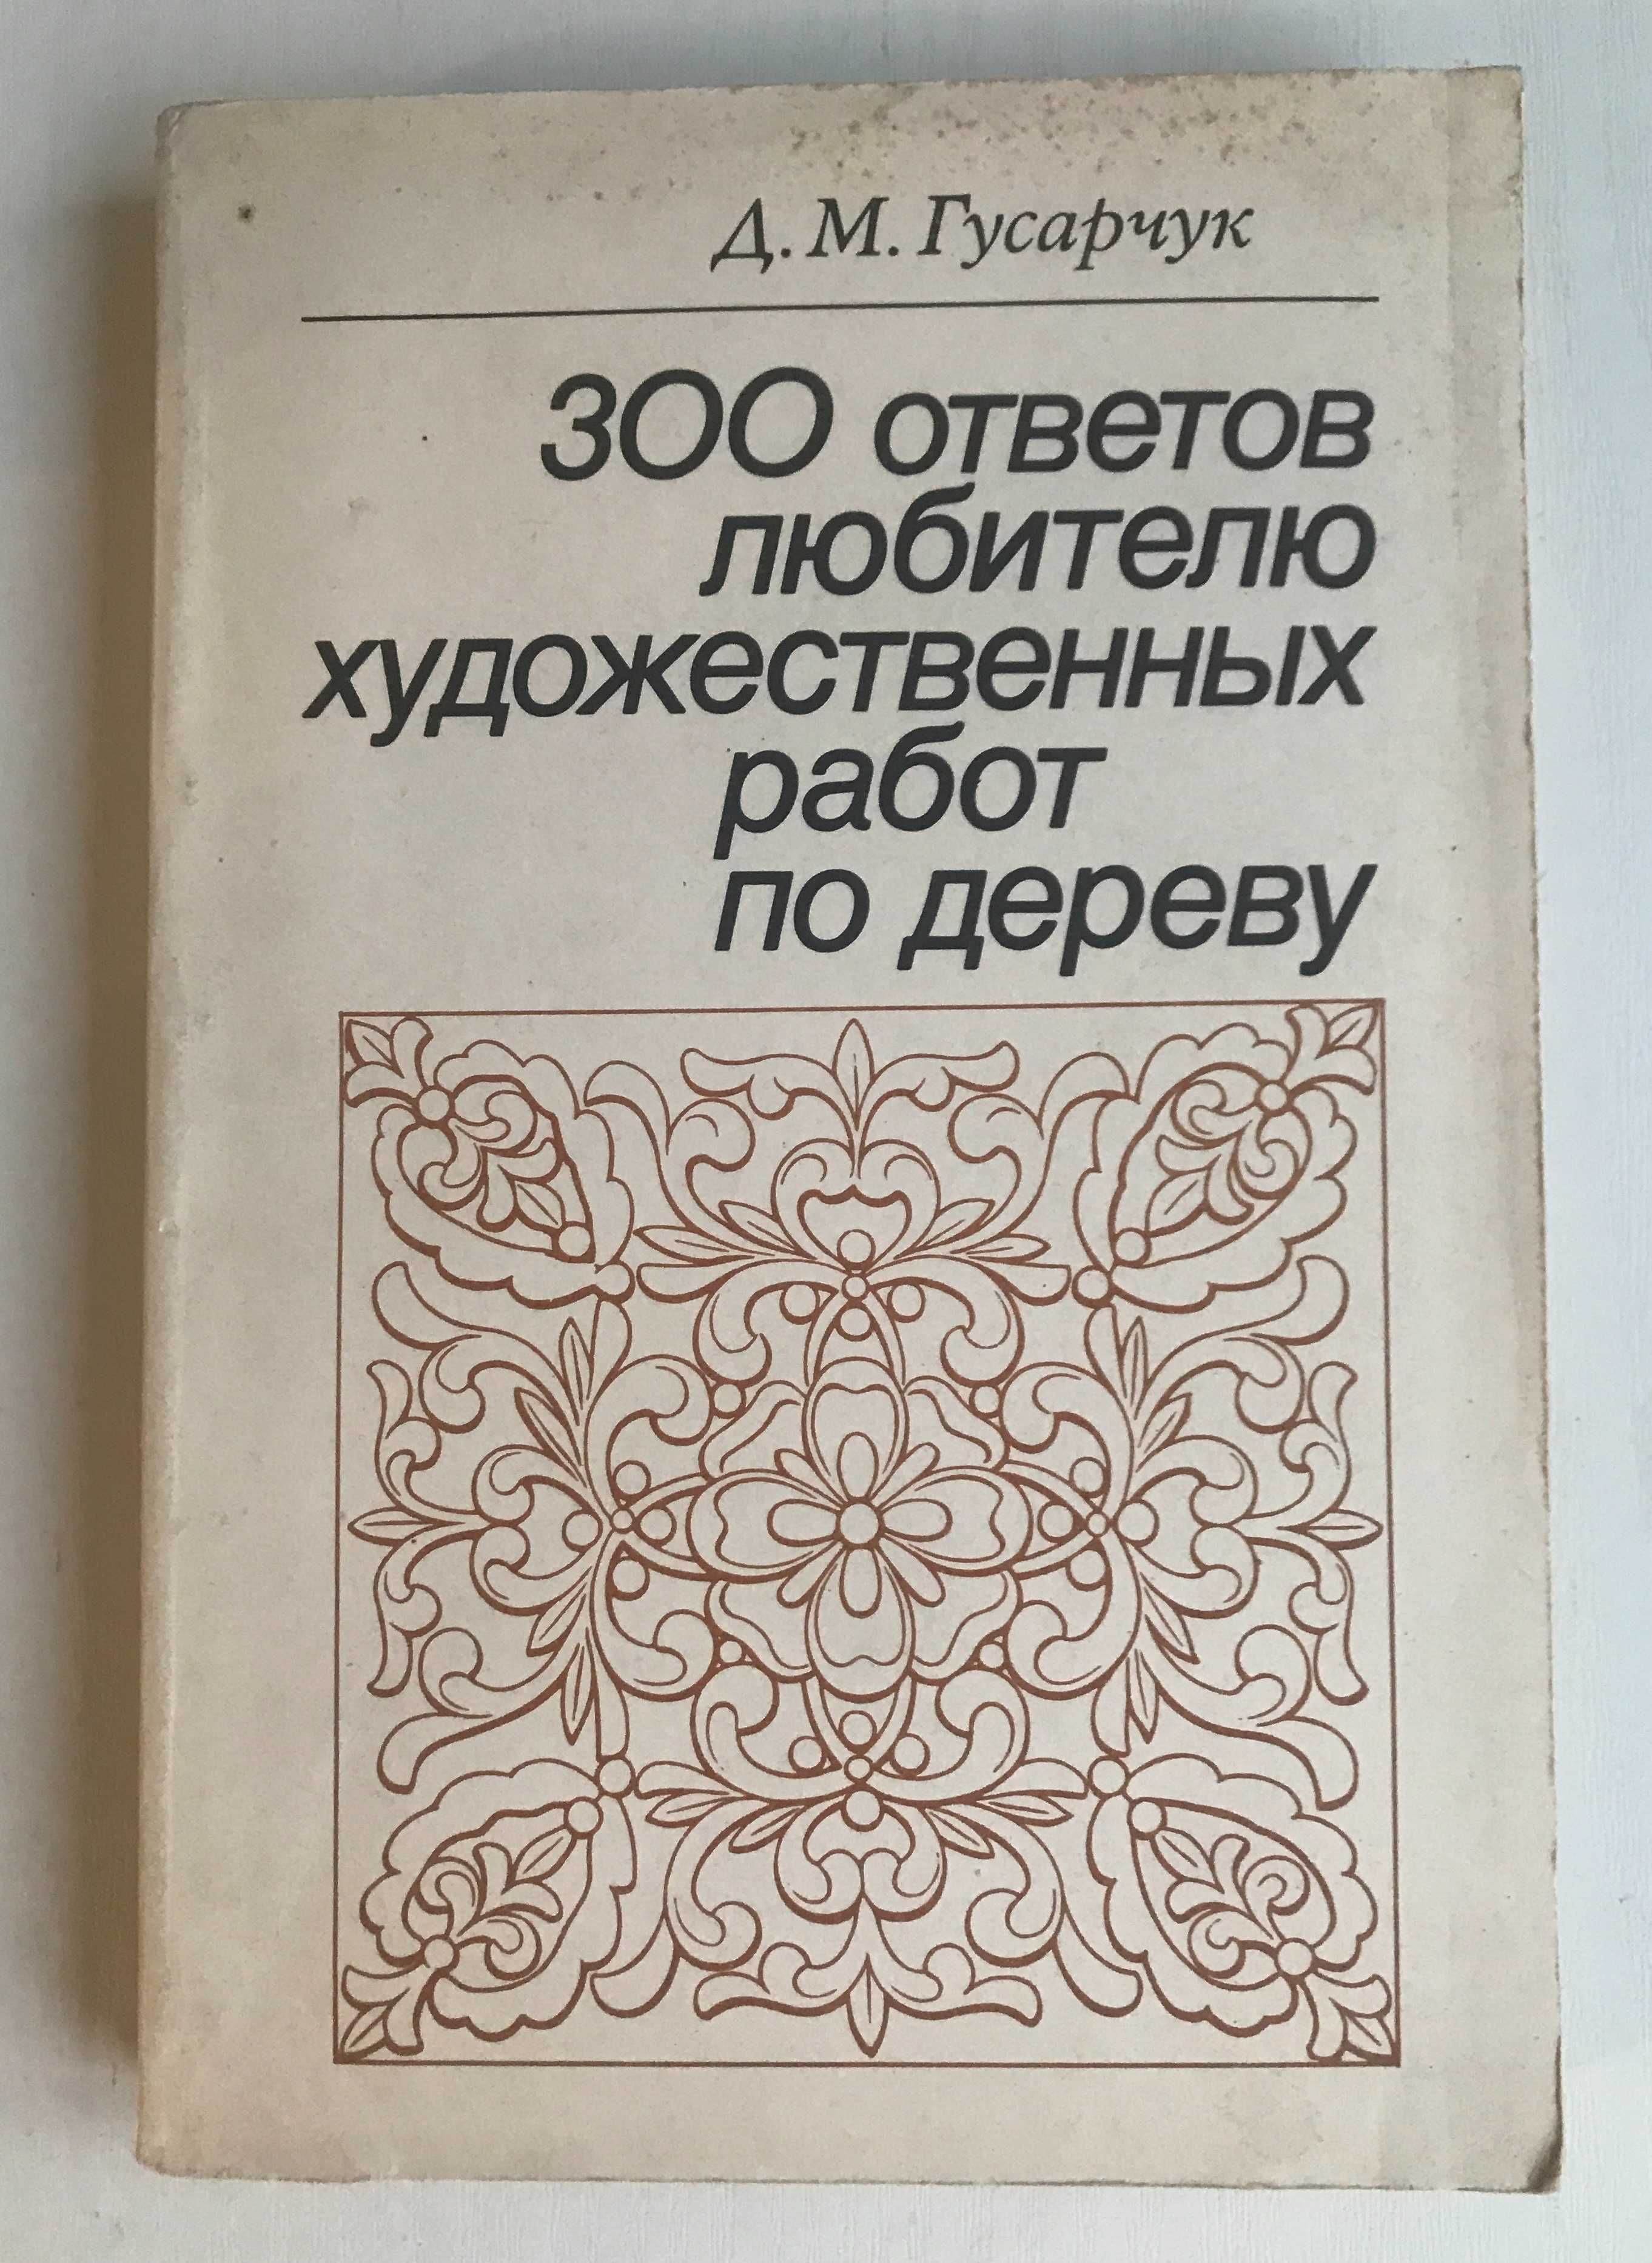 300 ответов любителю художественных работ по дереву. Д.Гусарчук. 1986.